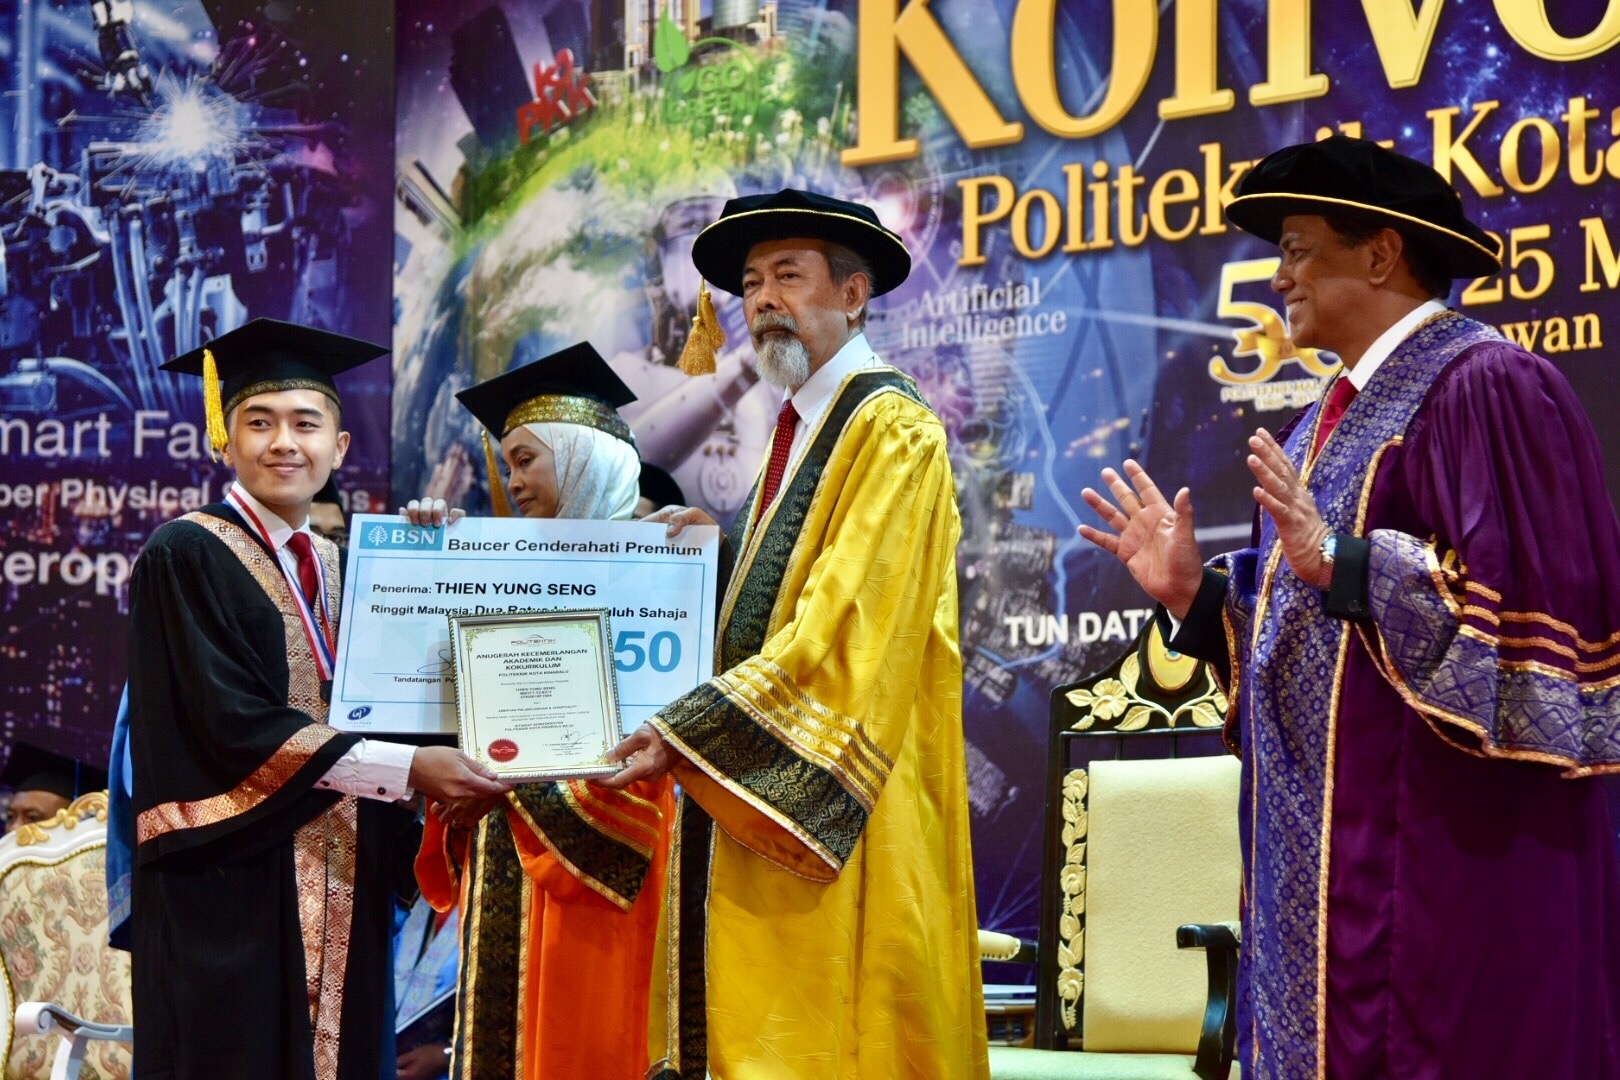 Graduan, Thien Yung Seng dari Jabatan Pelancongan dan Hospitaliti menerima Anugerah Kecemerlangan Akademik dan Kokurikulum yang disampaikan oleh Tun Juhar.